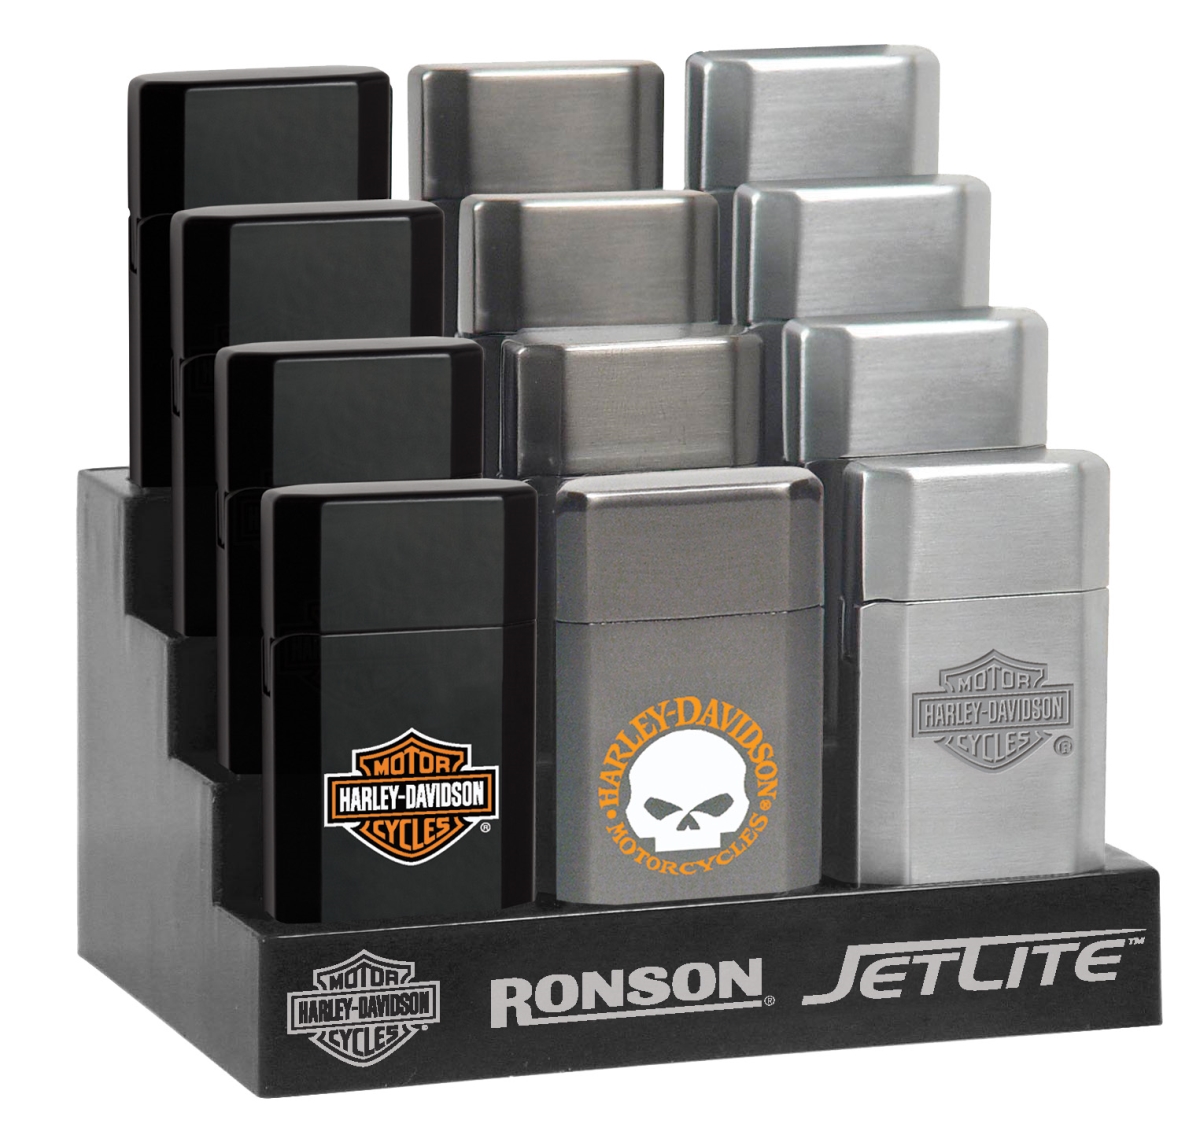 Ron-43521 2019 Ronson Harley Davidson Hd Jetlite Blister Card Assortment Lighter - Pack Of 12